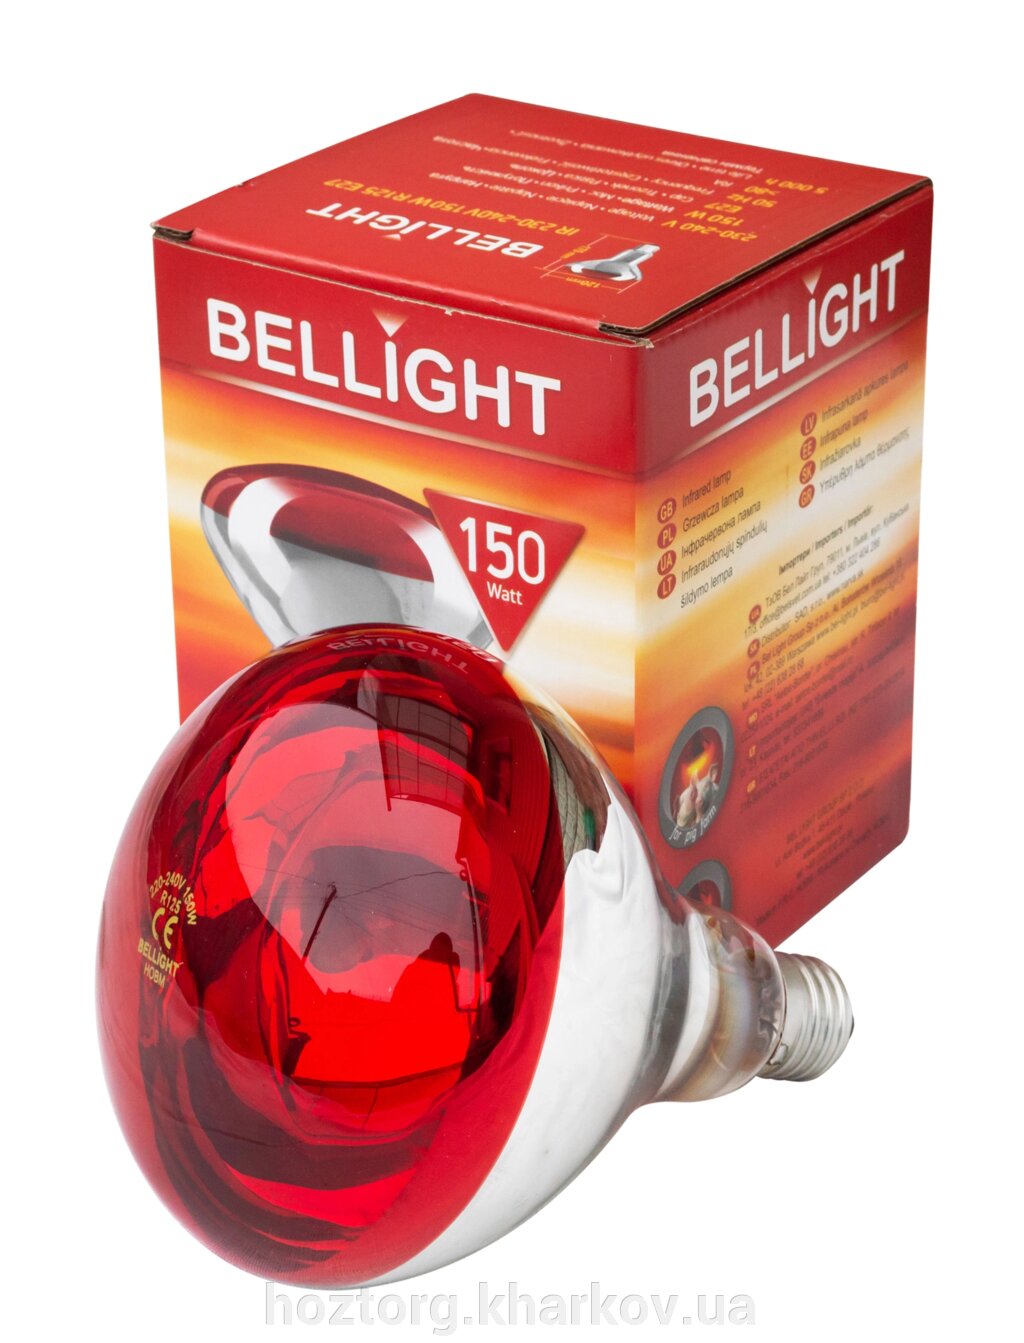 Лампа ІКЗК 150 Вт Е27 в коробочці (Bellight) від компанії Інтернет-магазин Хозторг Харків. Господарські товари оптом - фото 1